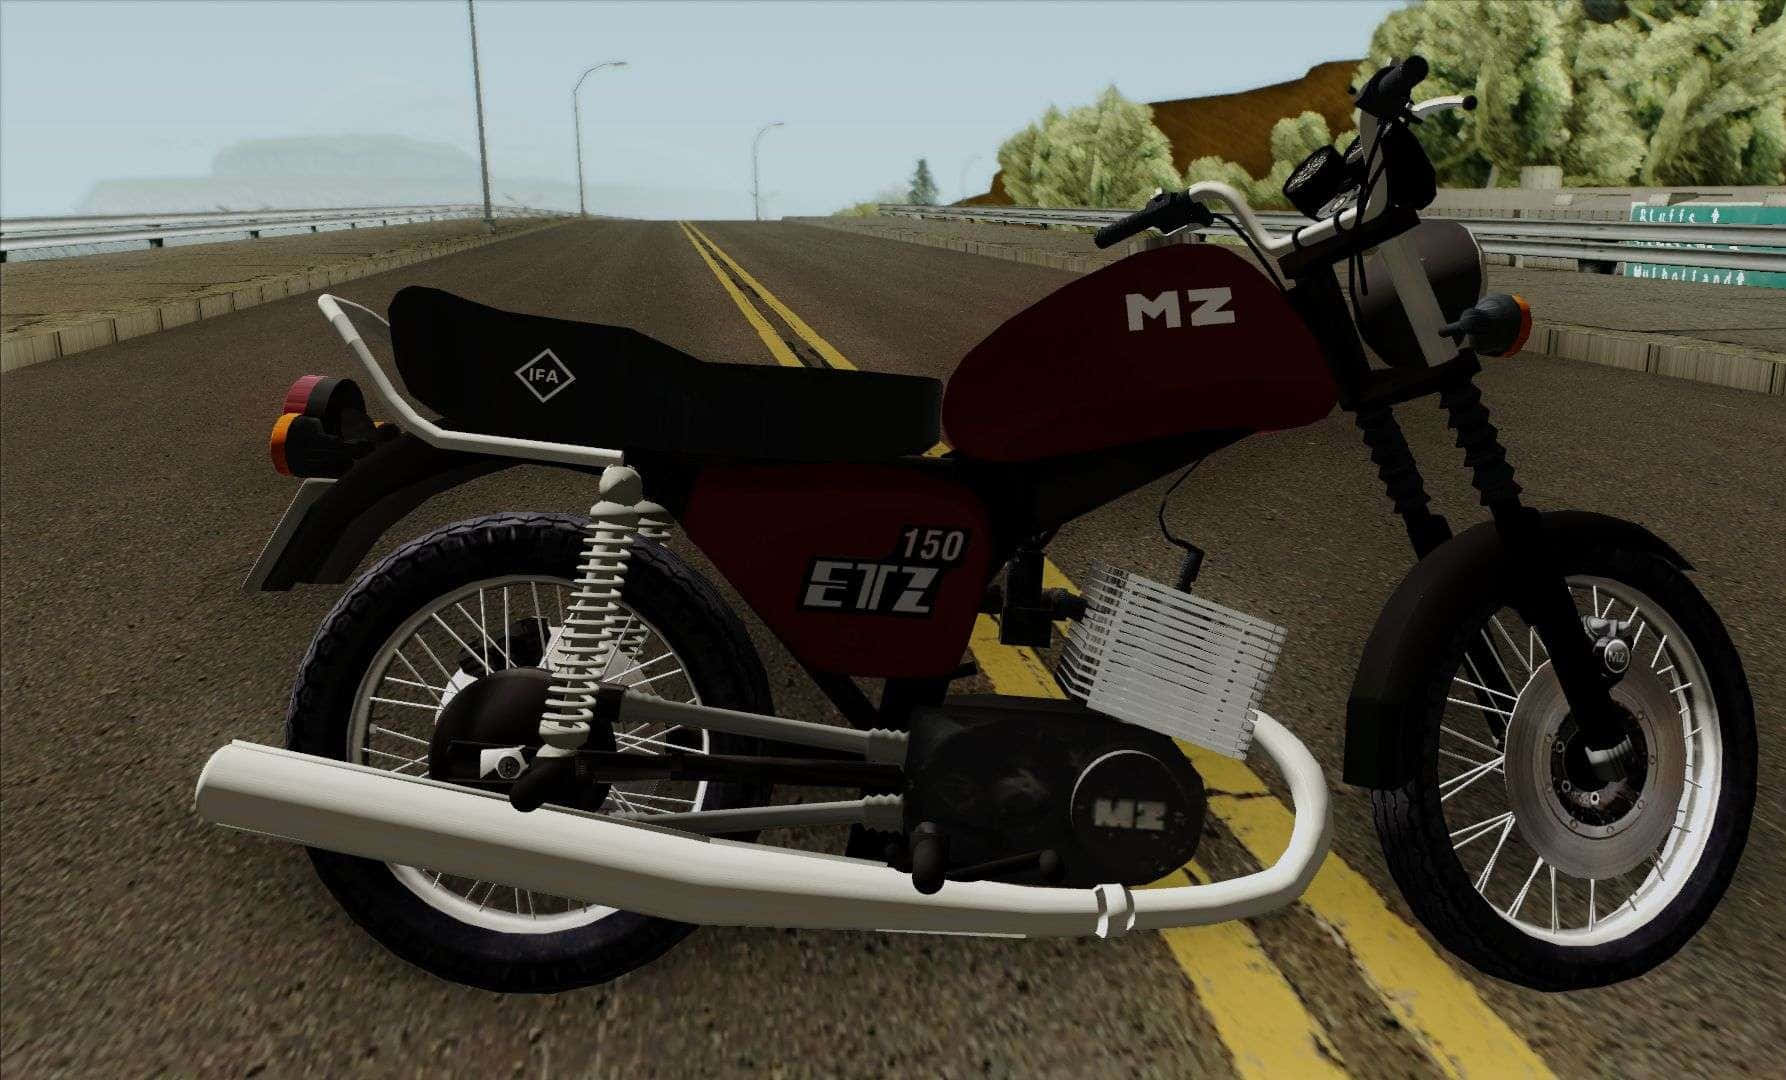 M Z E T Z150 Motorcycle On Road Wallpaper